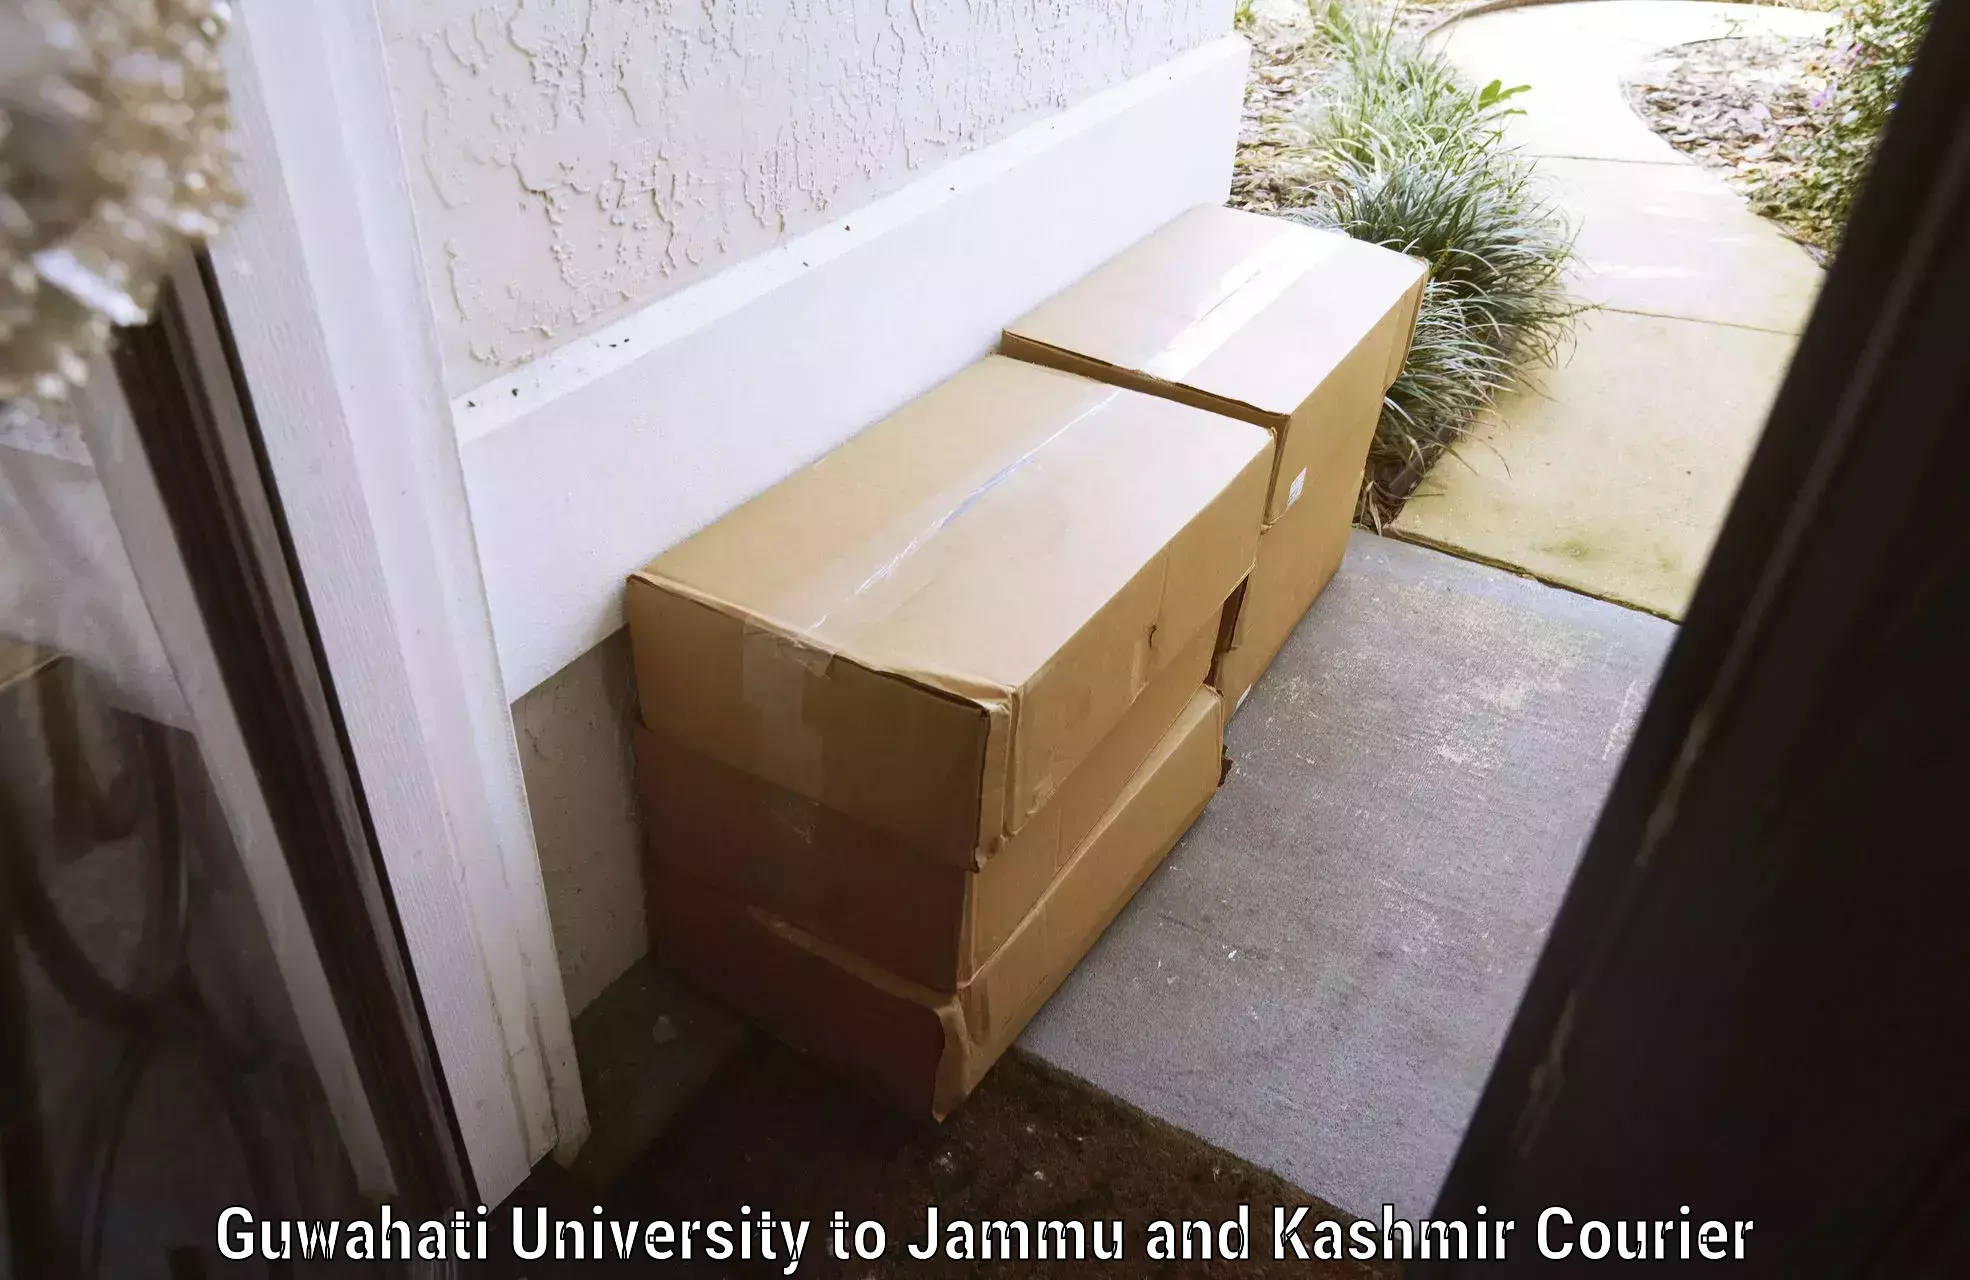 Excess baggage transport Guwahati University to University of Kashmir Srinagar